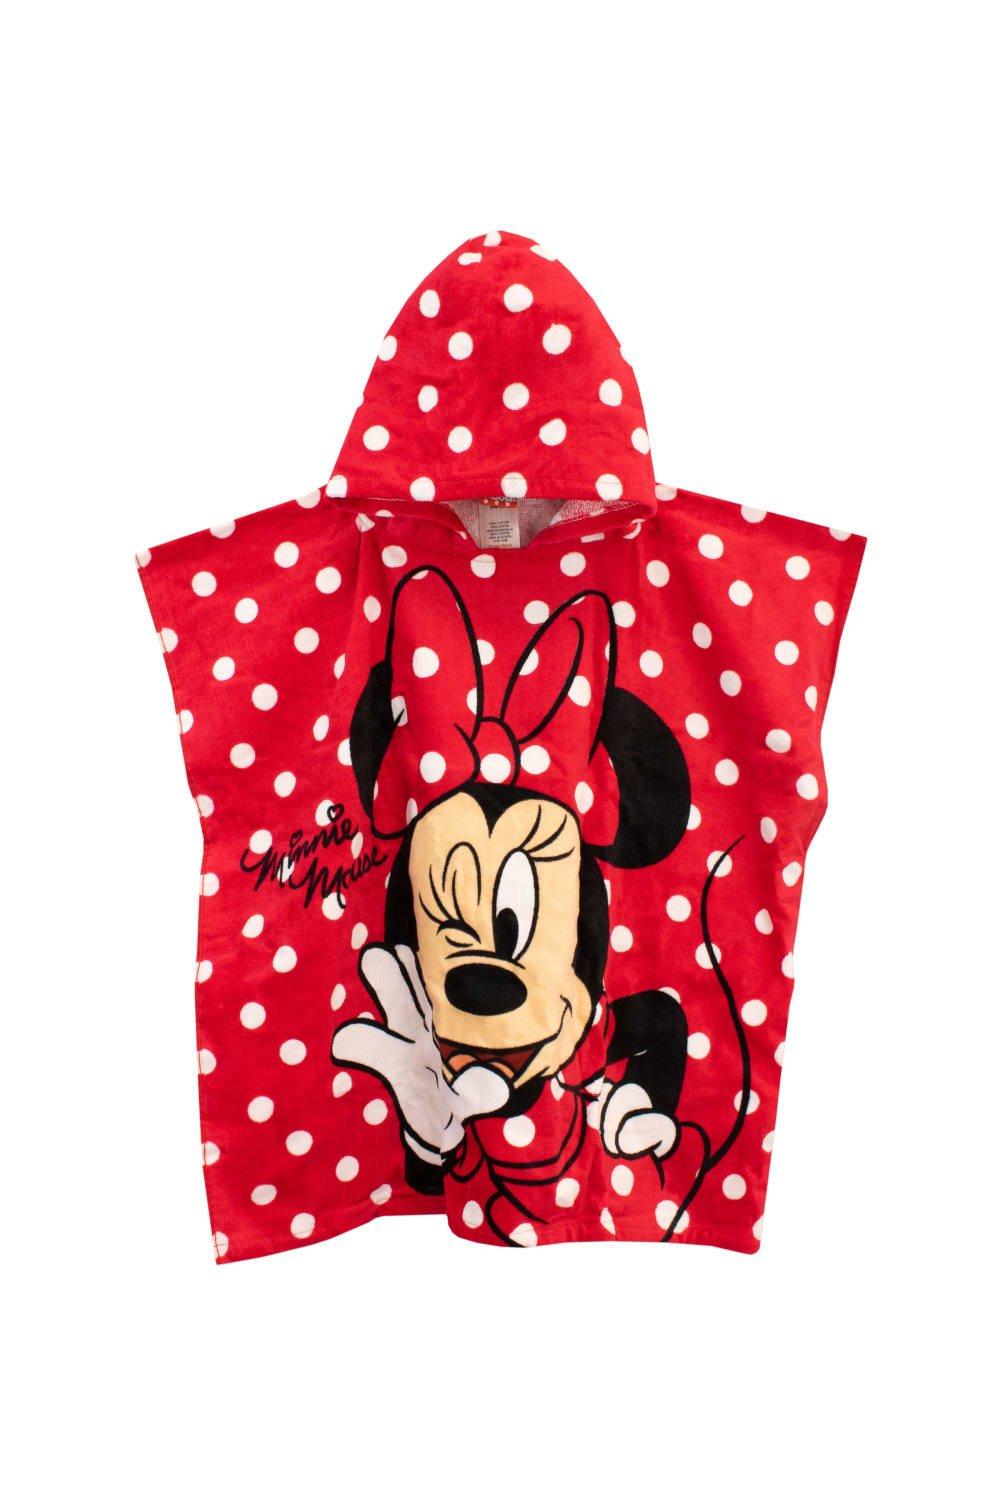 Полотенце-пончо с капюшоном Минни Маус Disney, красный фото